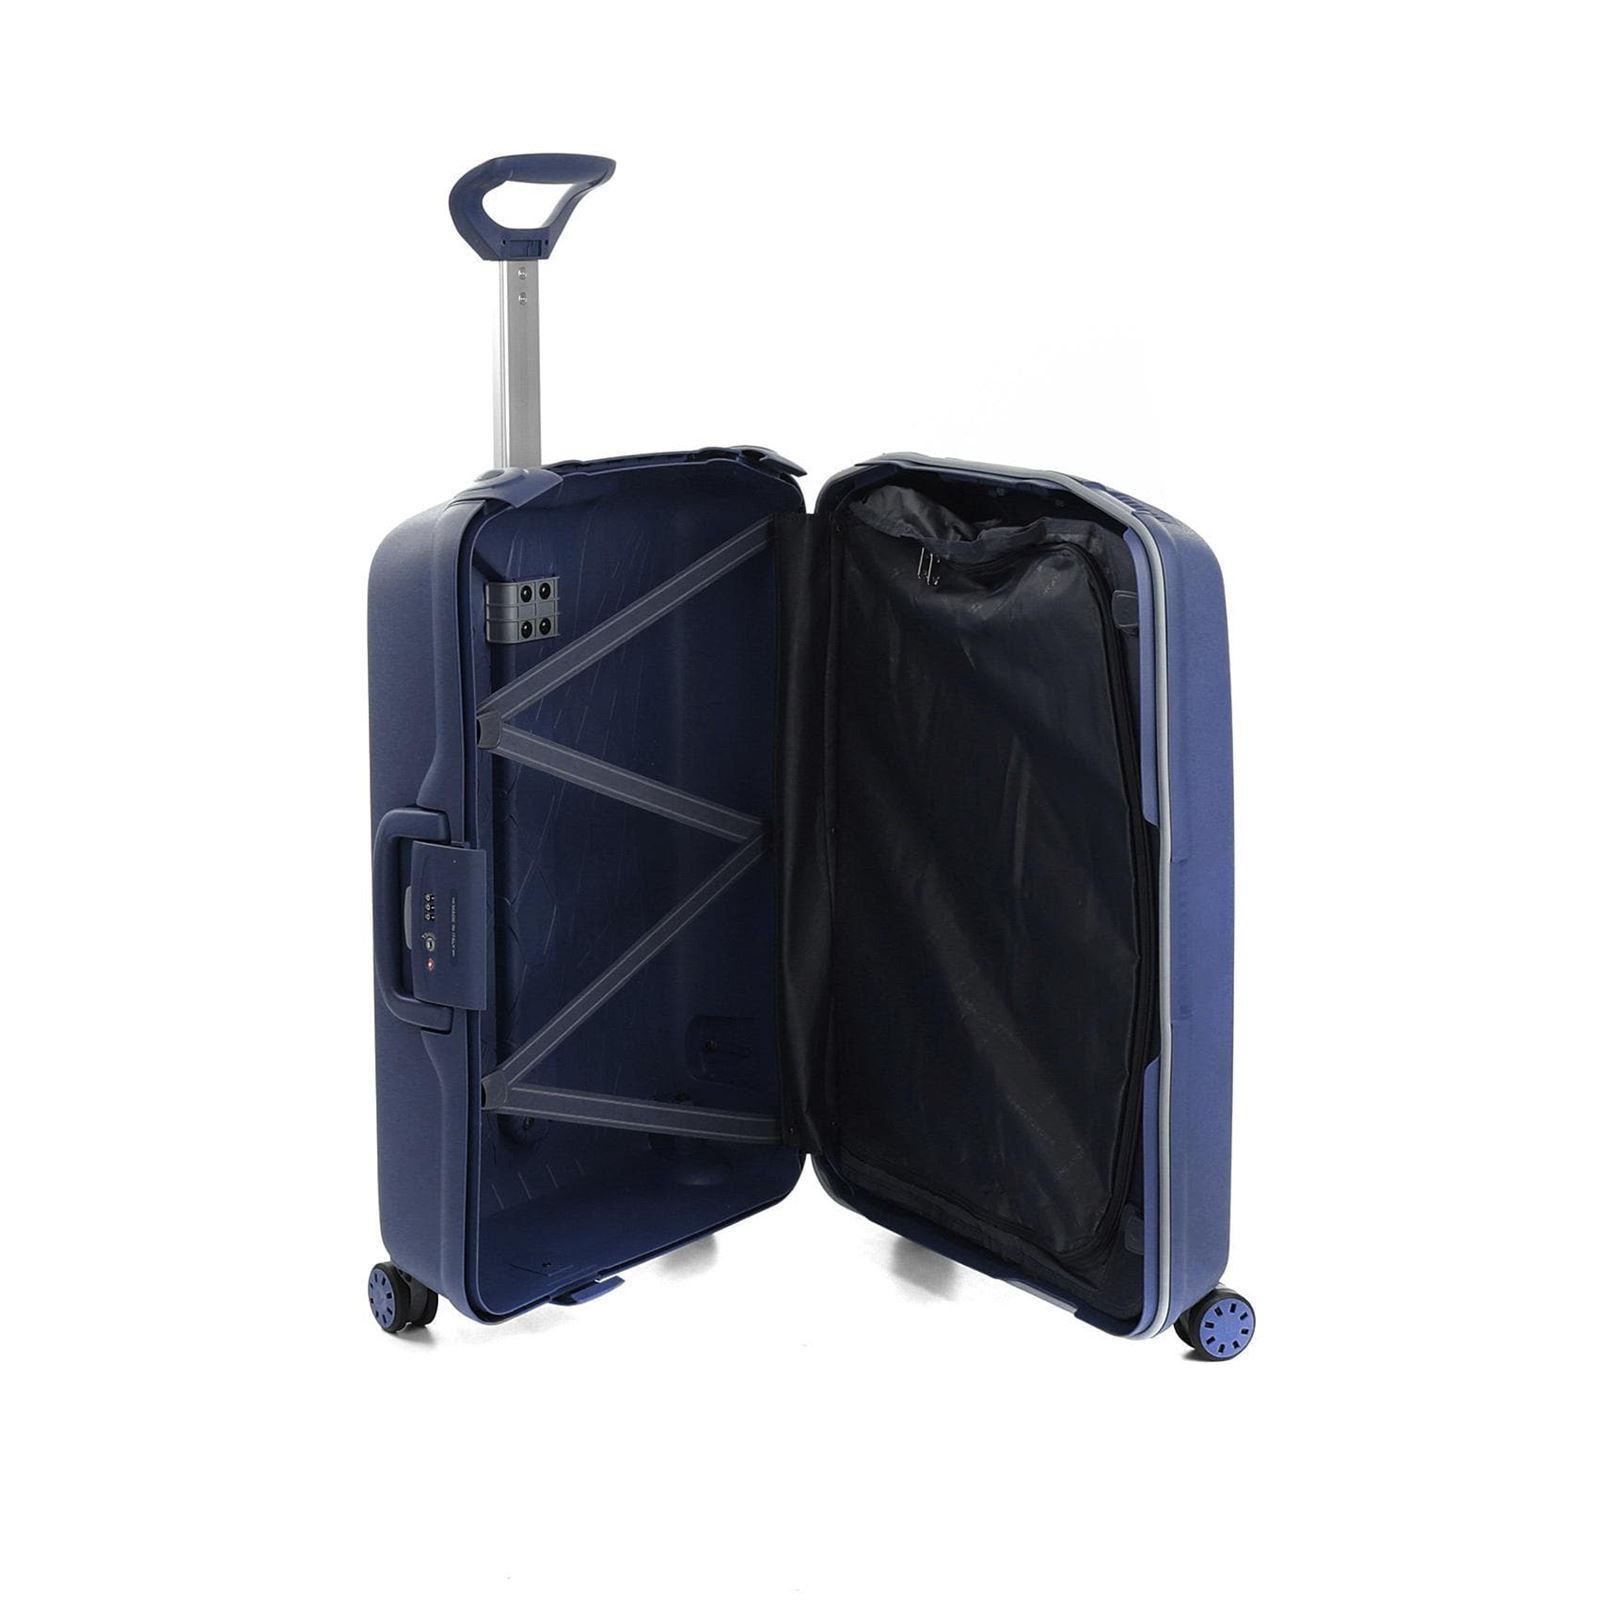 maleta mediana roncato light spinner 4 ruedas azul marino - Imagen 4